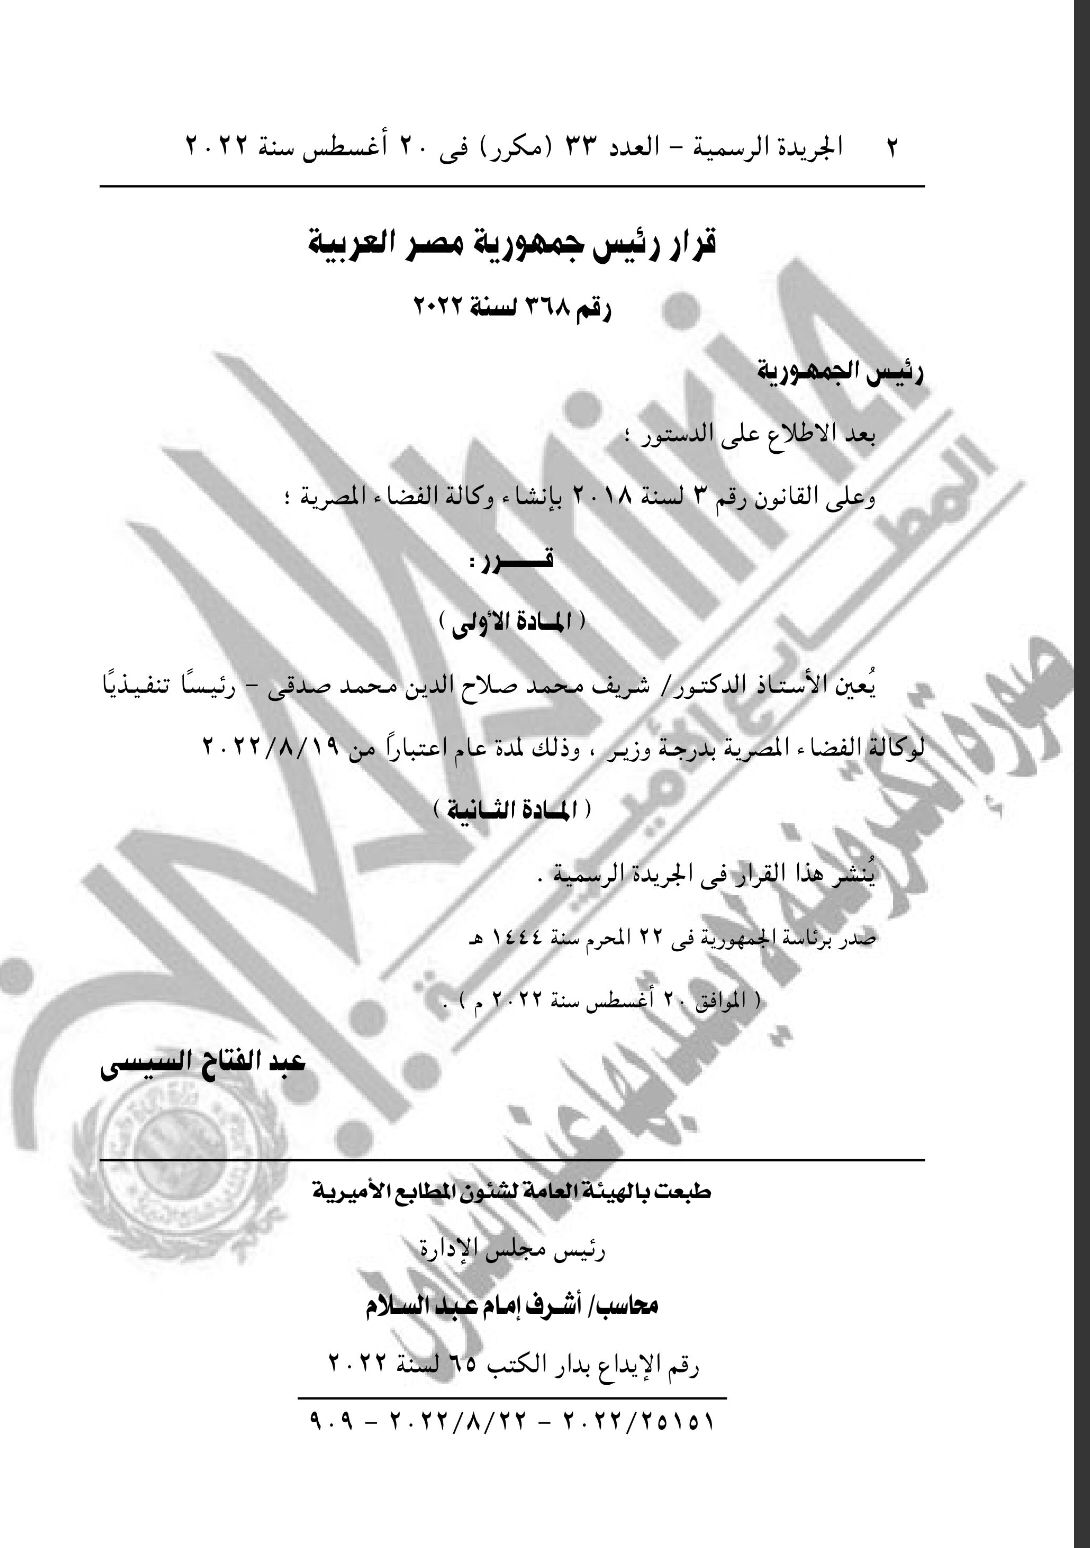 «برتبة وزير»| تعيين شريف صدقي رئيسًا تنفيذيًا لـ وكالة الفضاء المصرية بـ قرار جمهوري